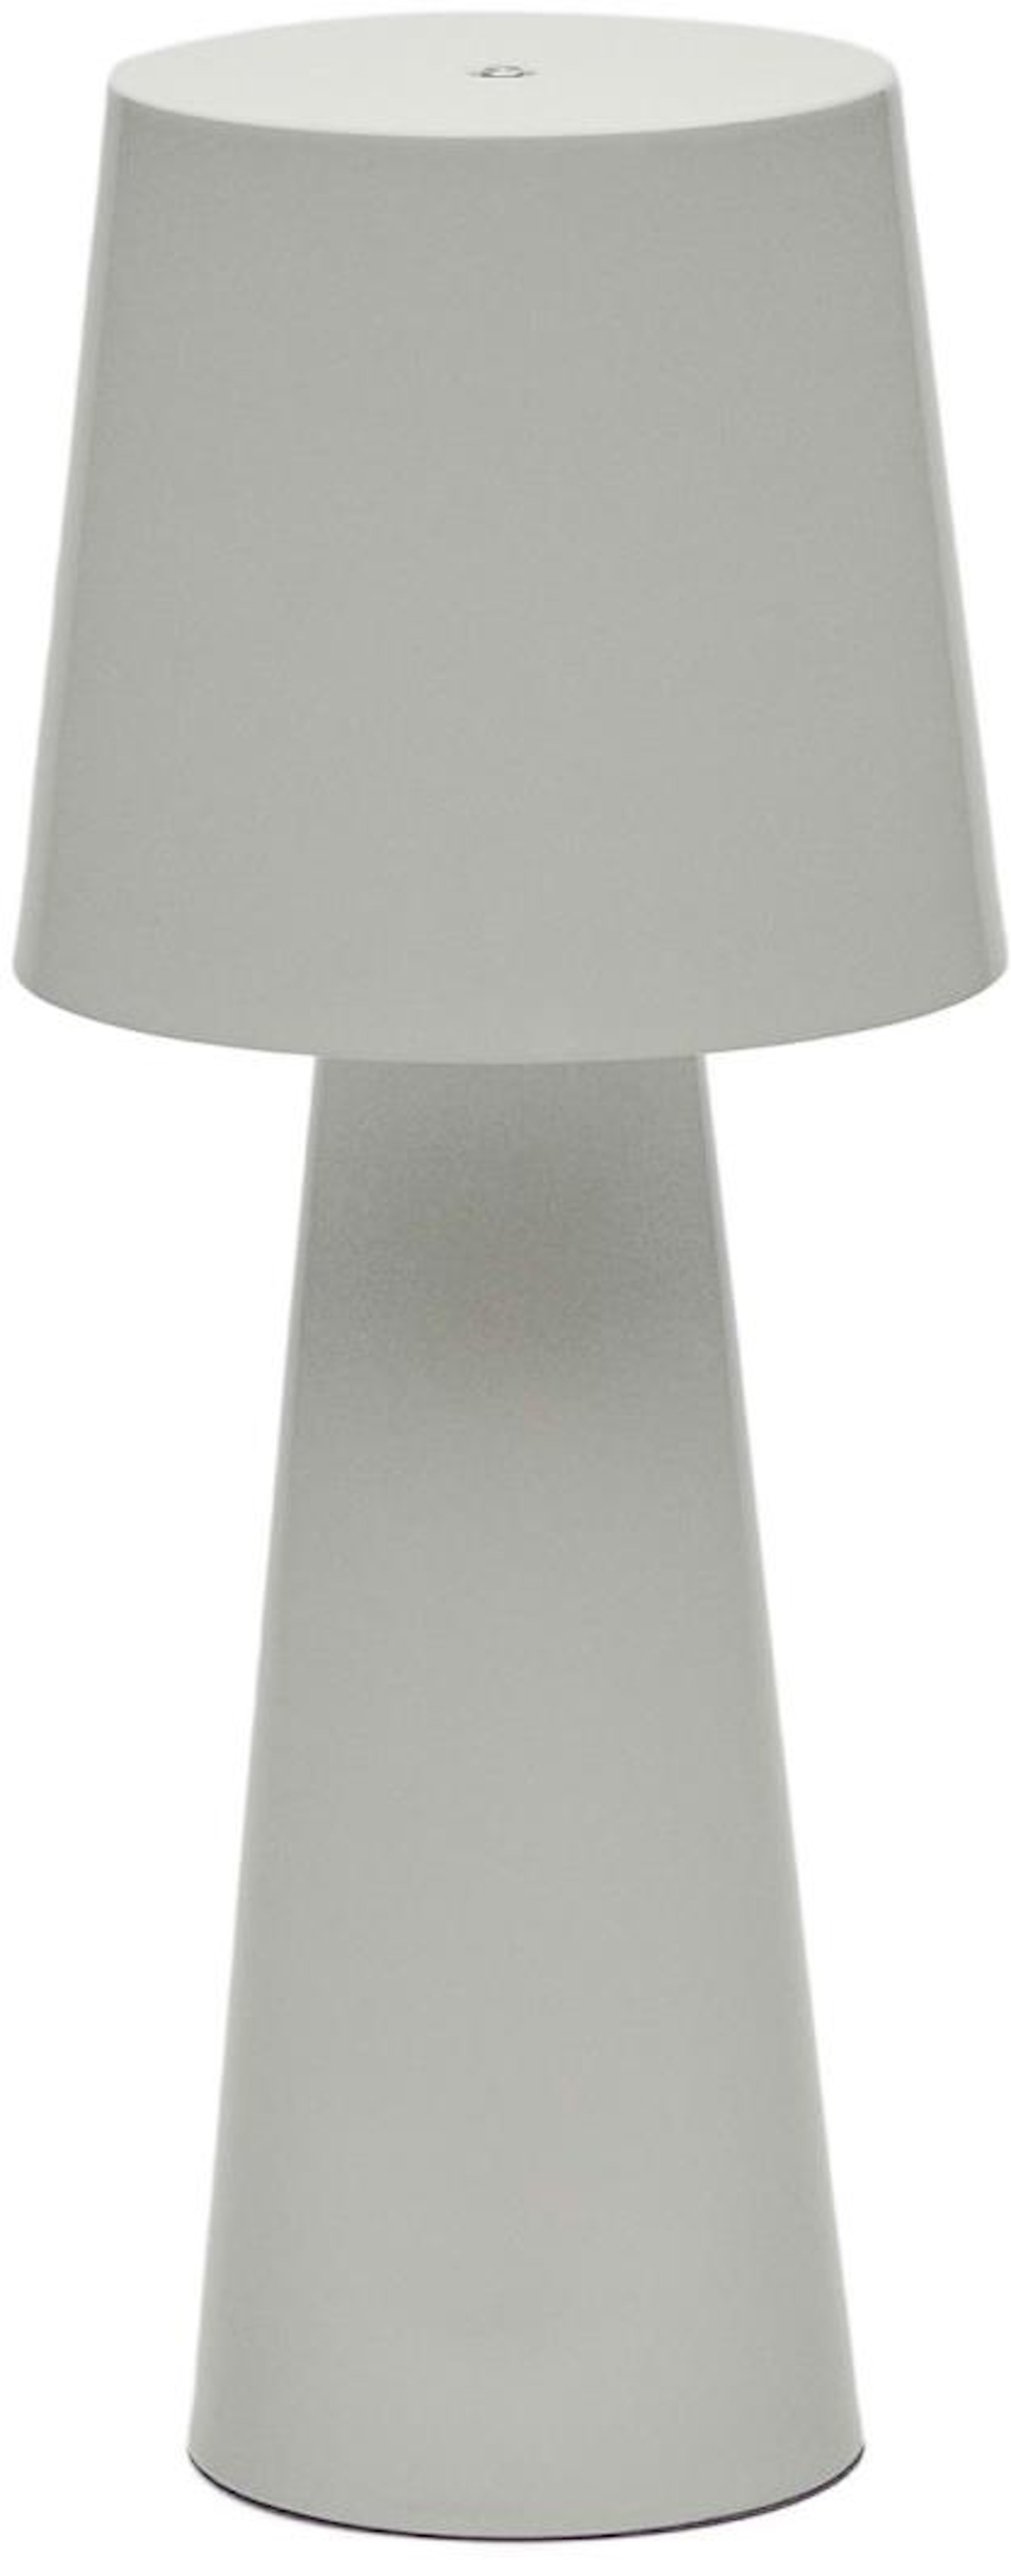 LAFORMA Arenys stor bordlampe med gråmalet finish